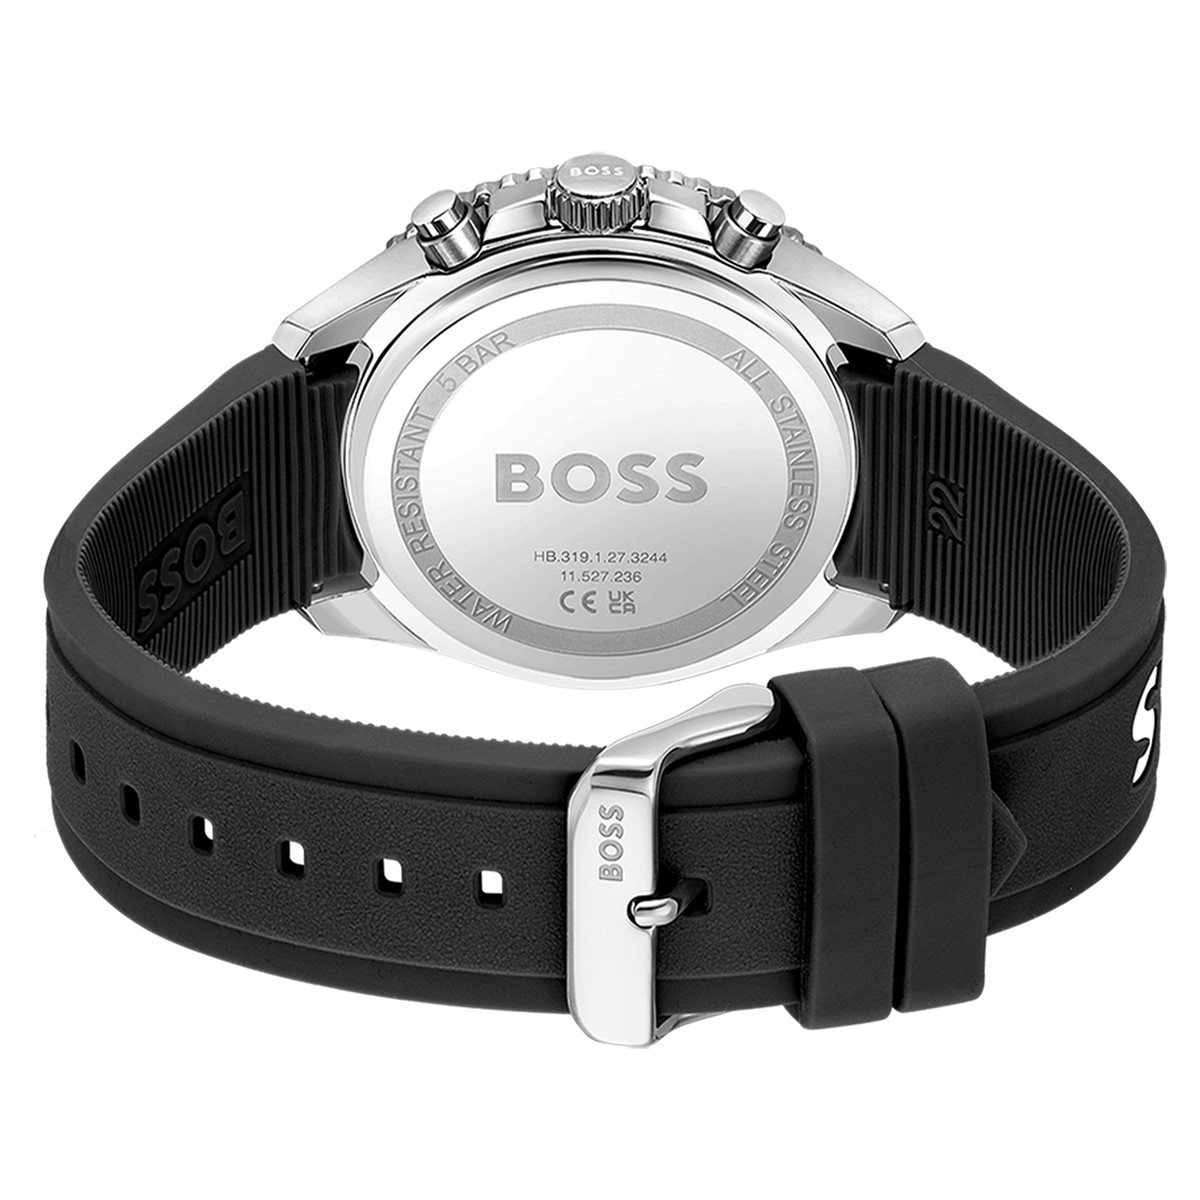 Montre BOSS sport lux homme chronographe bracelet silicone noir - vue 3